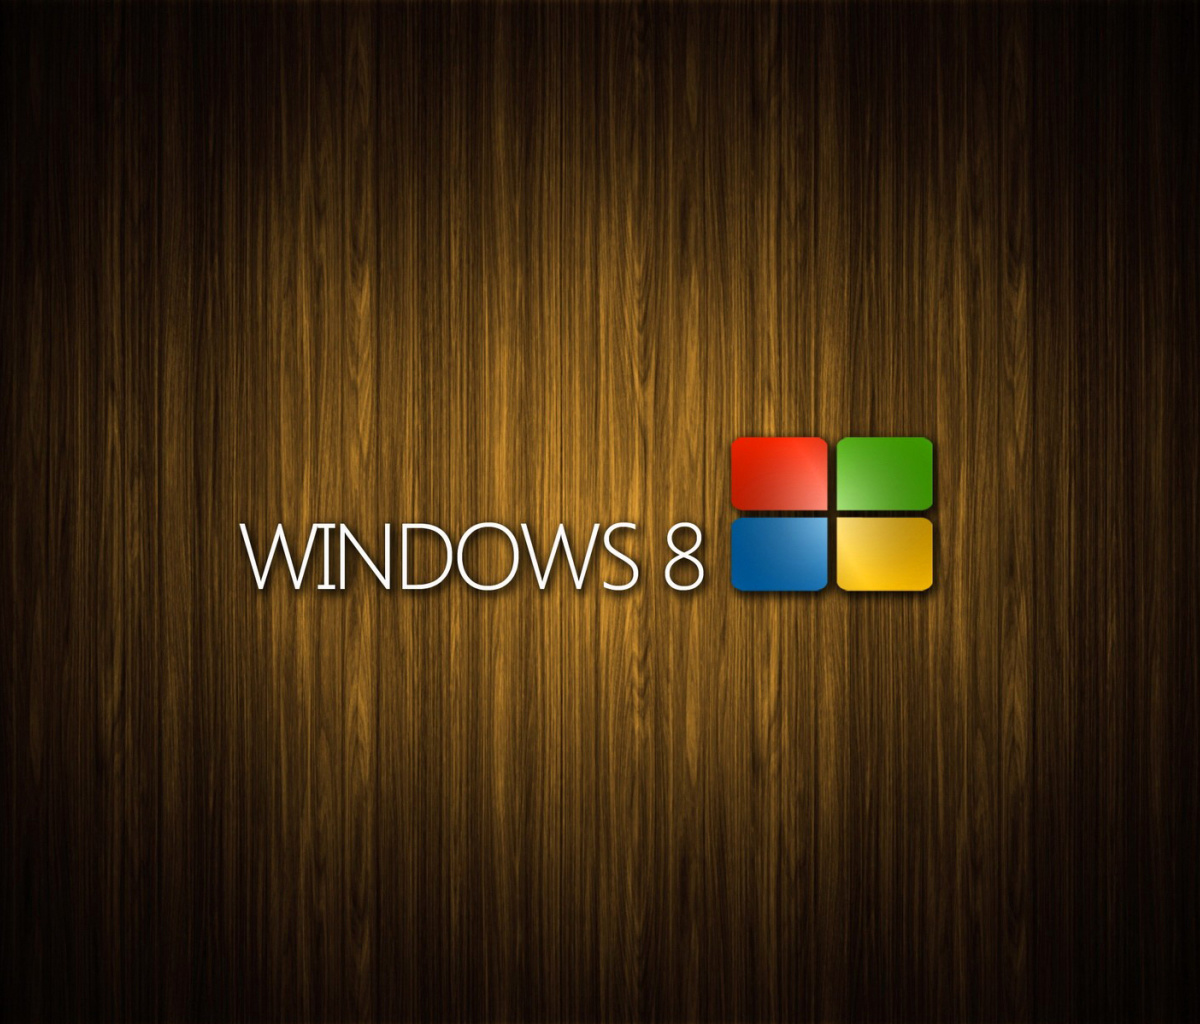 Windows 8 Wooden Emblem wallpaper 1200x1024